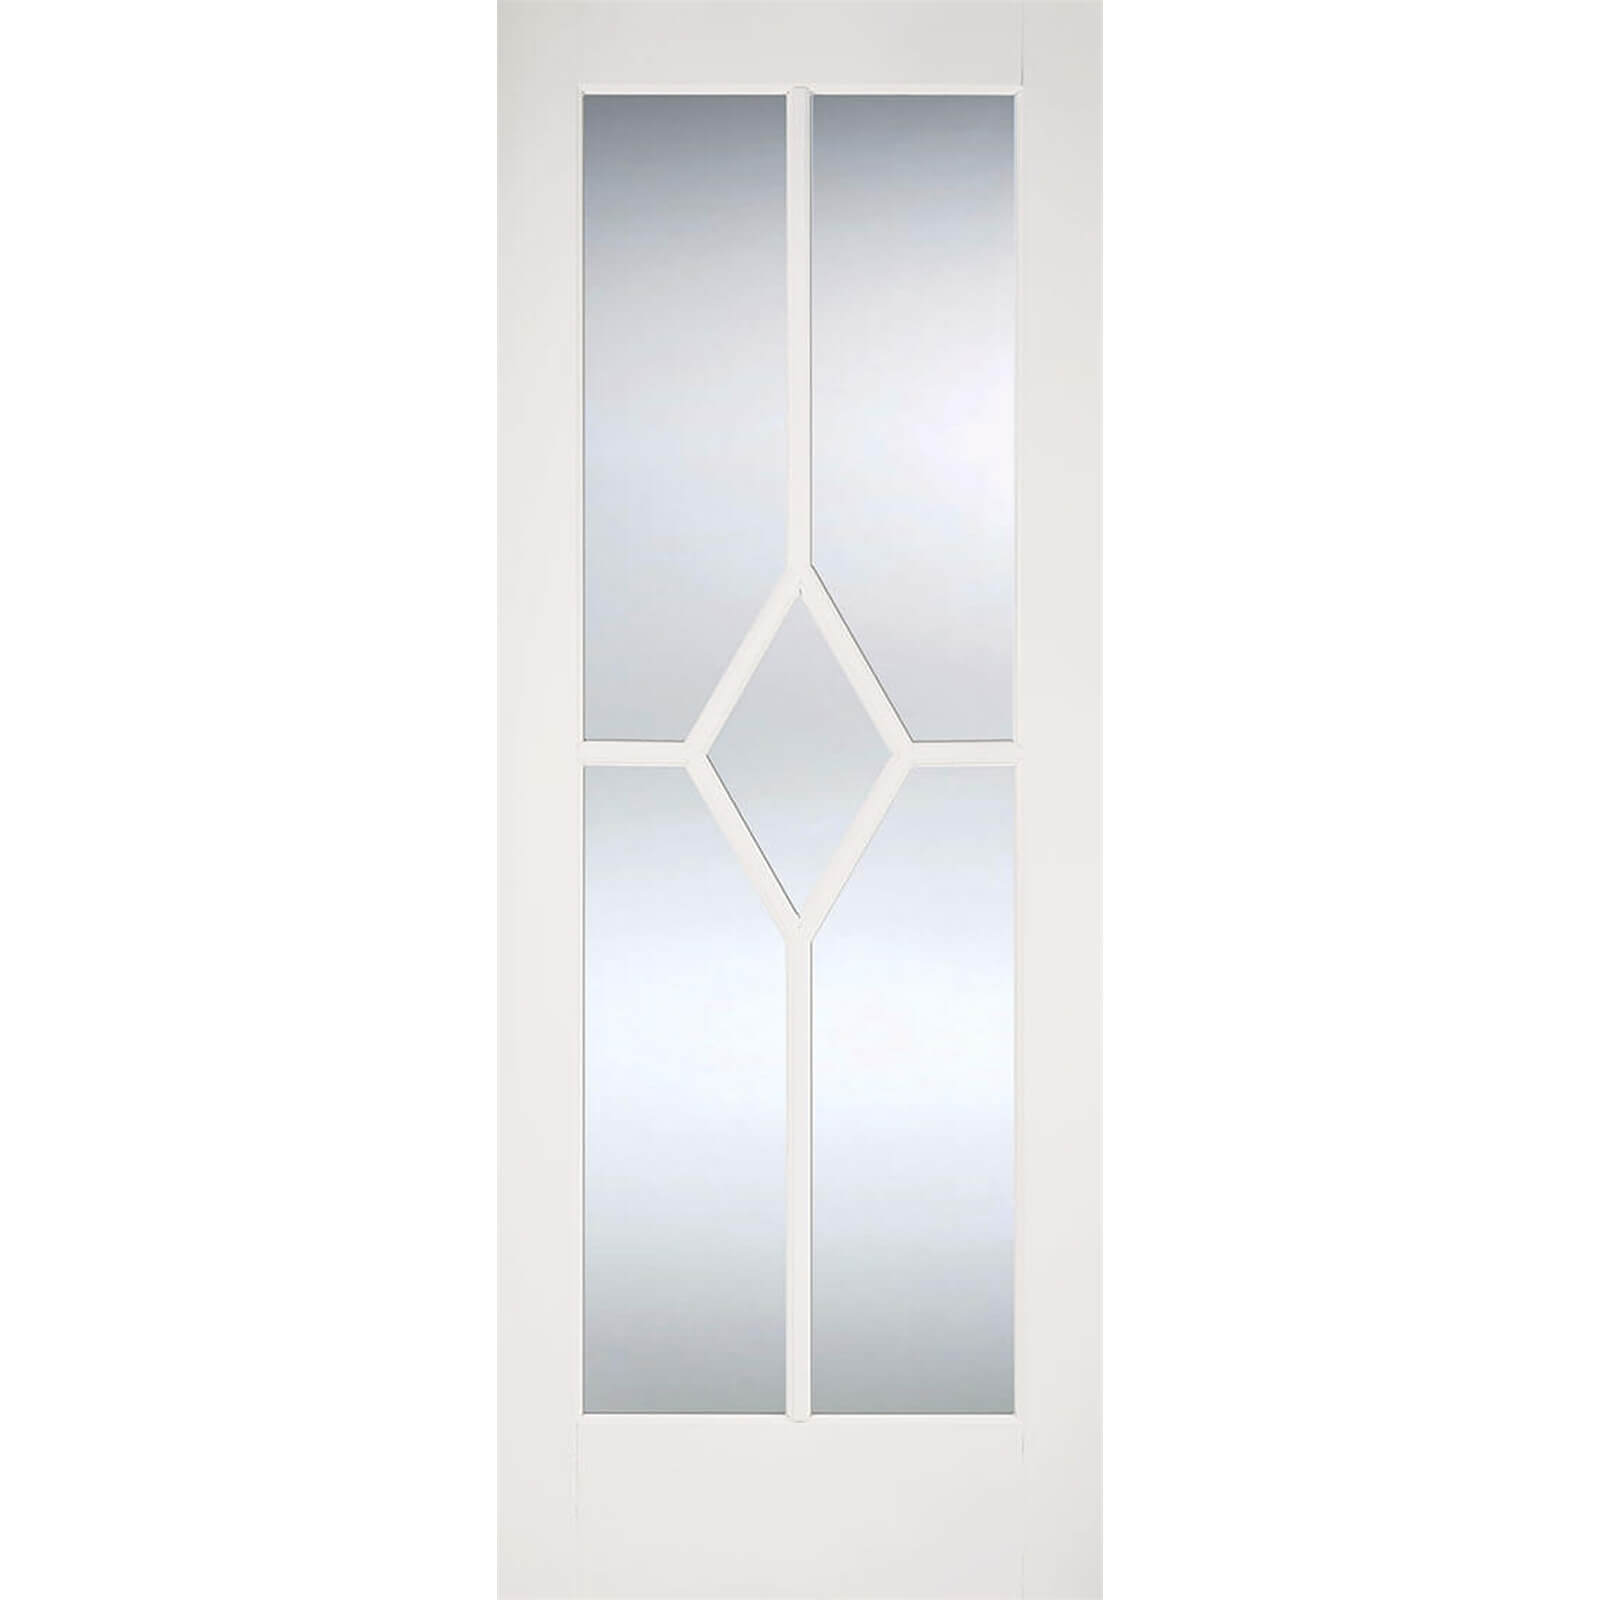 Reims Internal Glazed Primed White 5 Lite Door - 686 x 1981mm